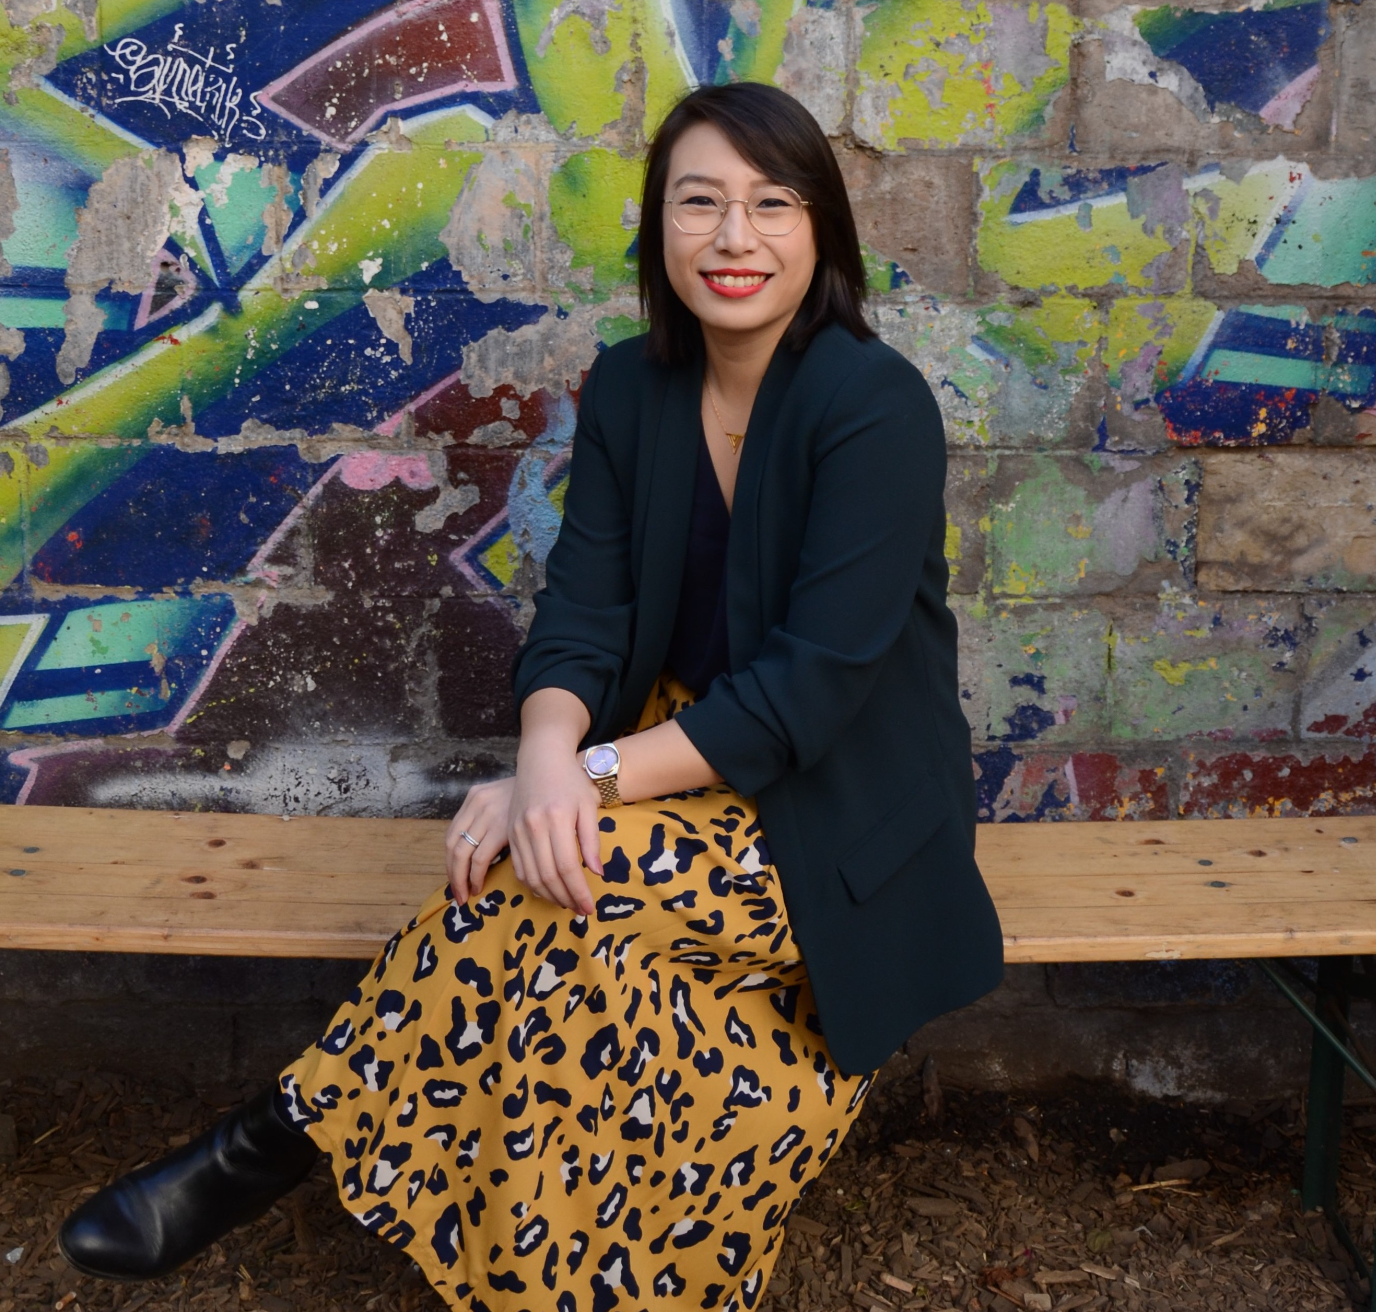 Ausha : Jennifer Han nommée à la direction du marketing